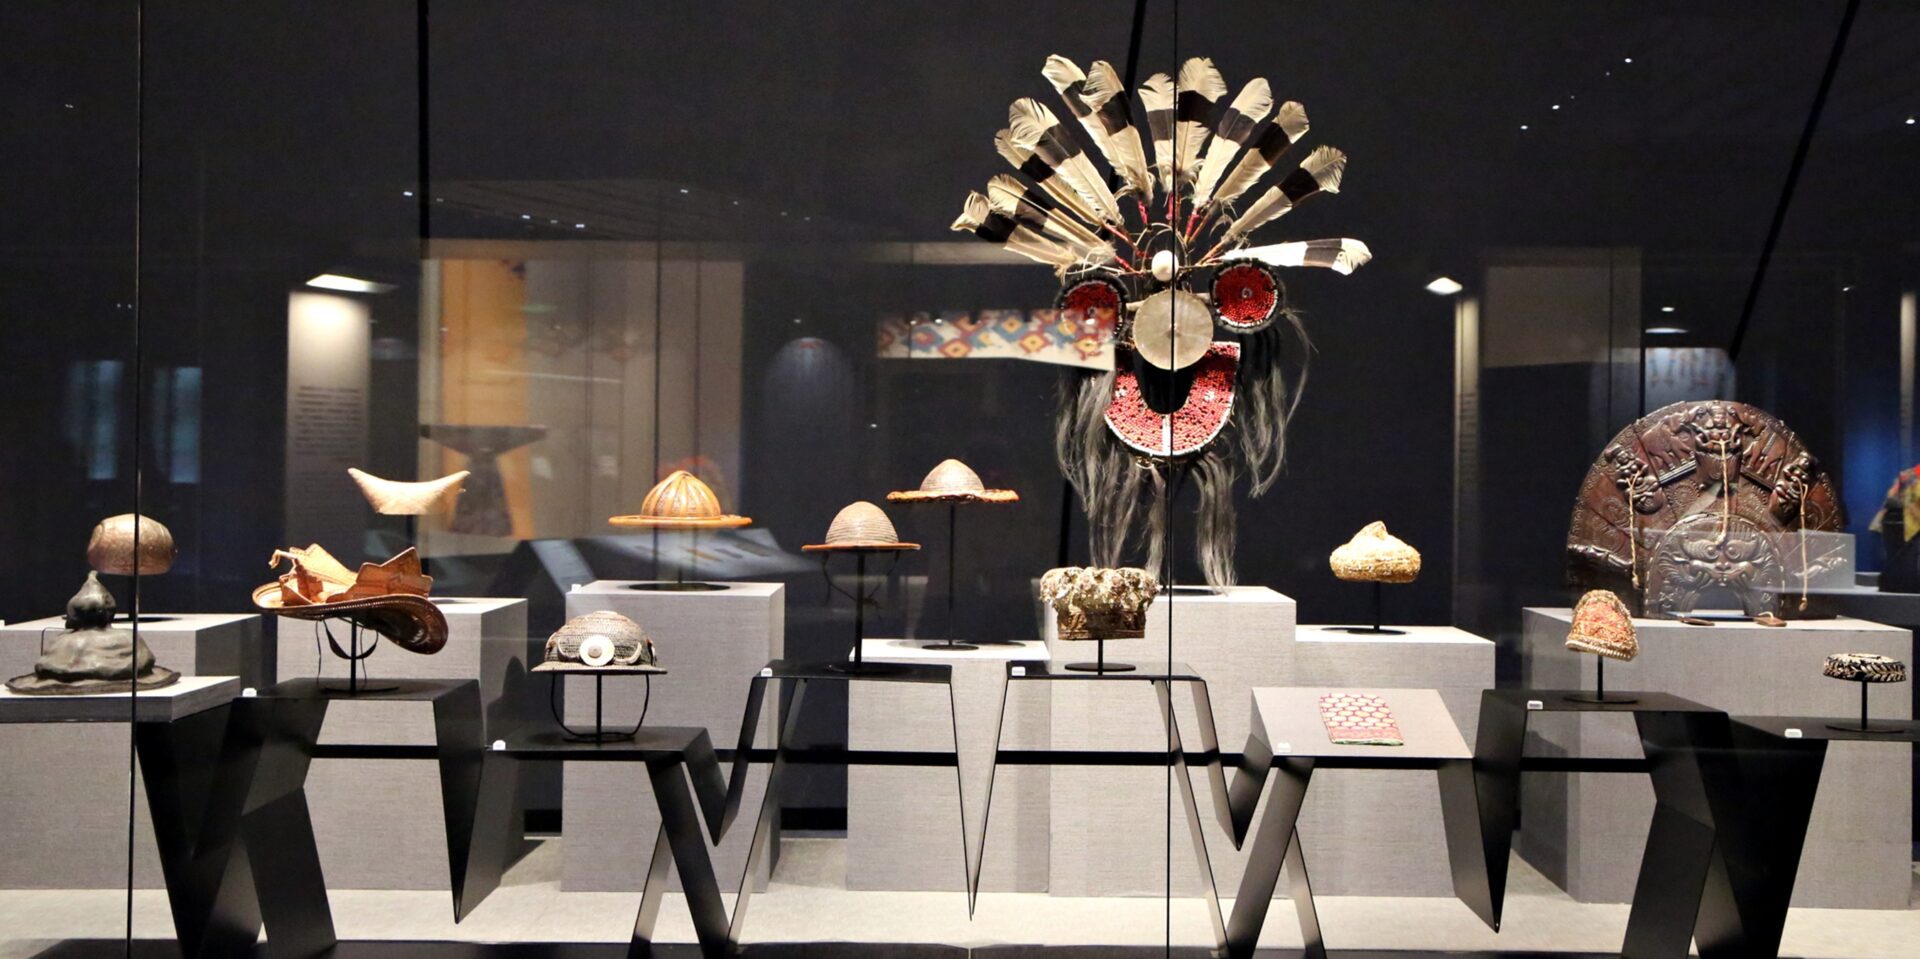 故宮南院展出50件亞洲織品珍品　首度亮相《羅摩衍那》全幅繪染布